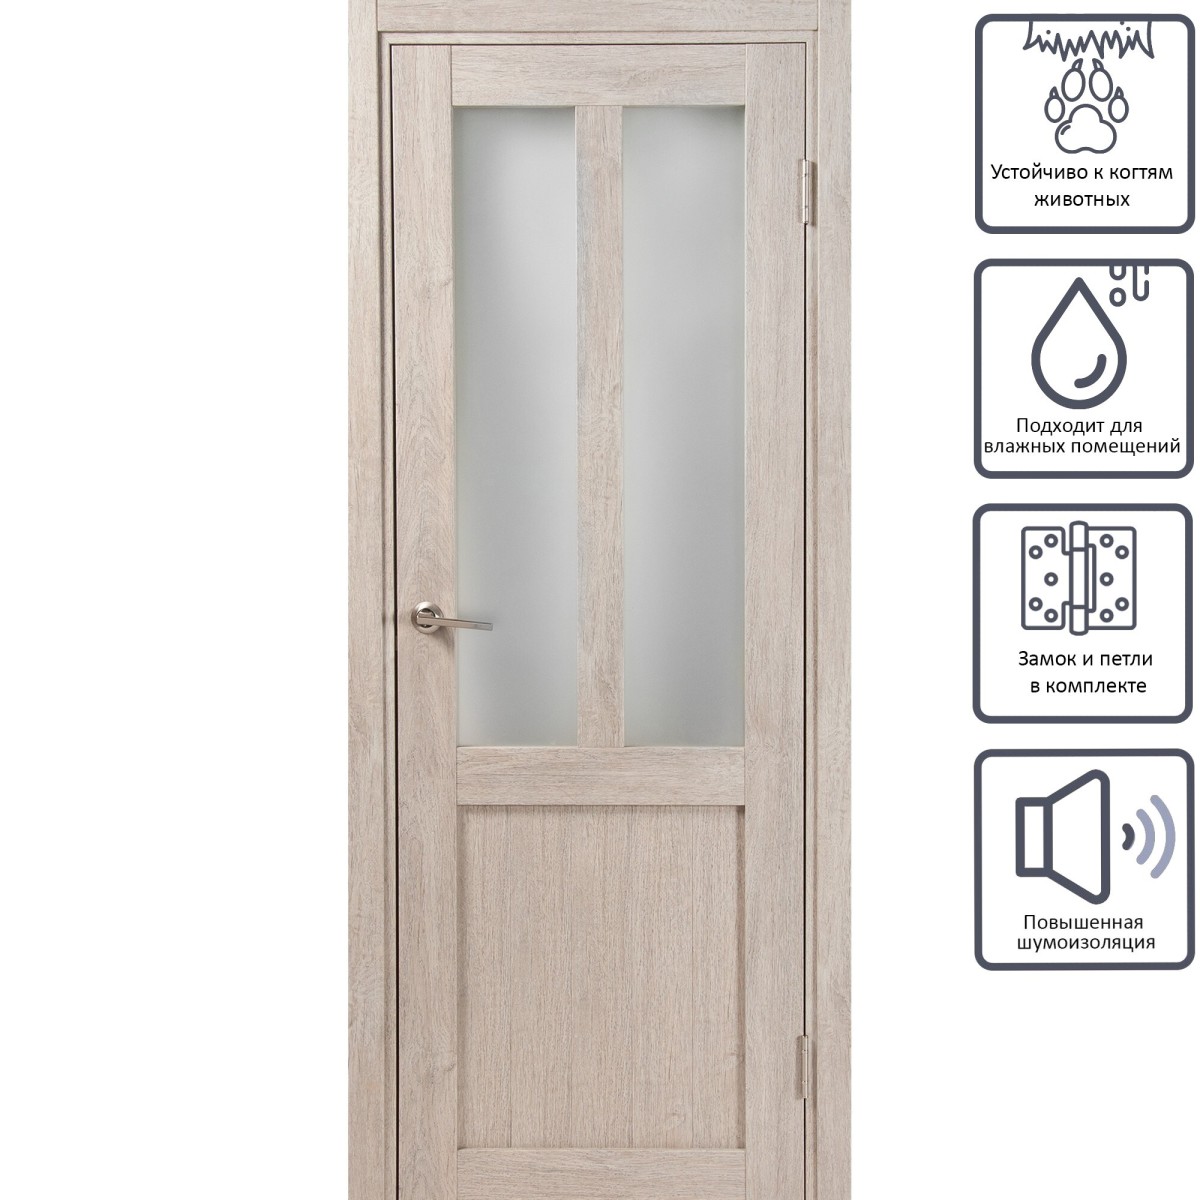 Дверь межкомнатная остеклённая Кантри 70x200 см, ПВХ, цвет дуб эссо, с фурнитурой